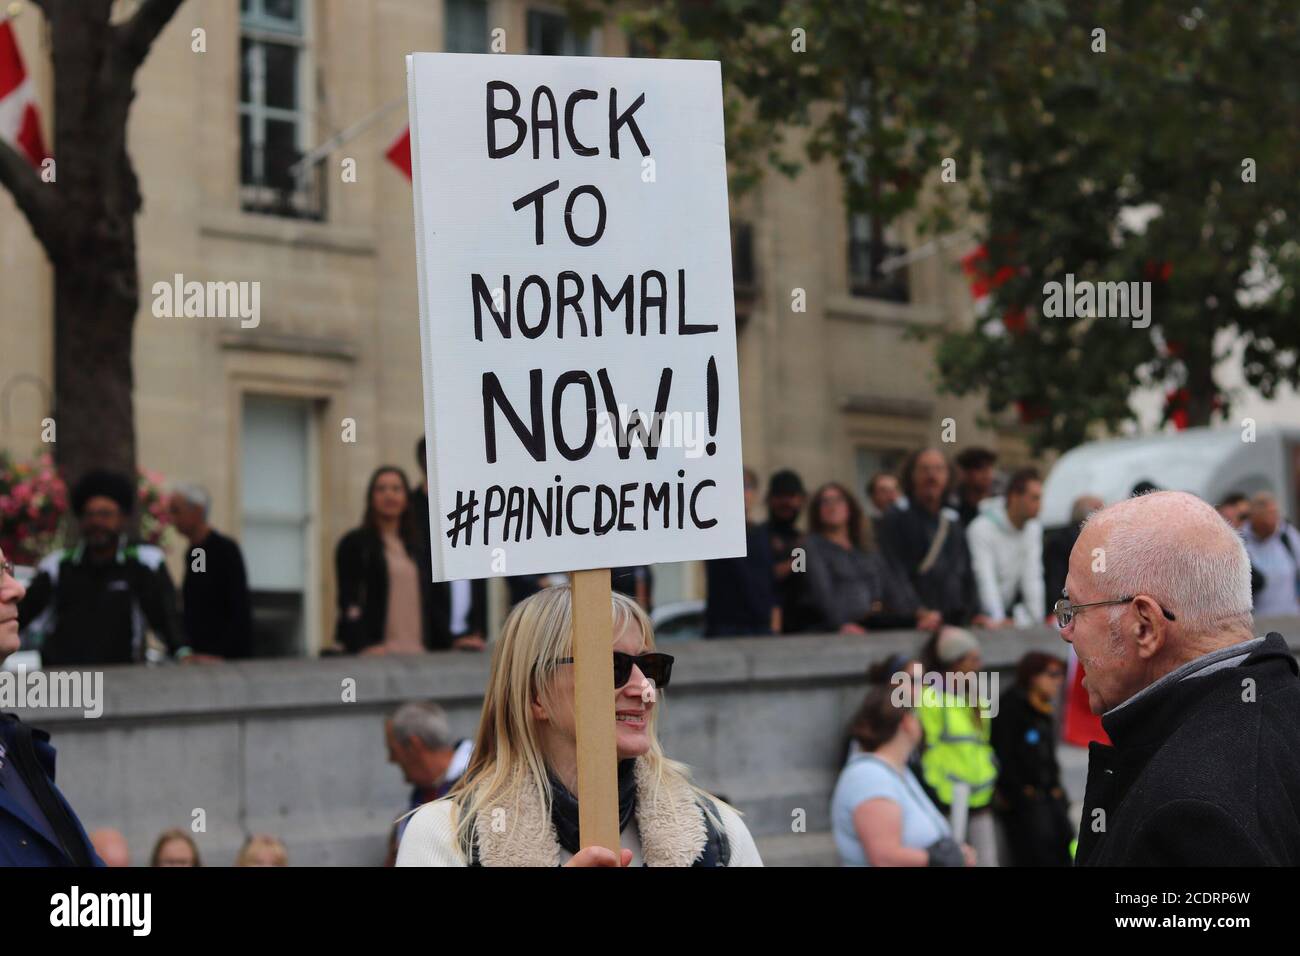 LONDON, ENGLAND, AUGUST 29 2020, Tausende von Anti-Maske-Demonstranten versammeln sich auf dem Trafalger Square gegen Lockdown-Beschränkungen, Maskenverschleißschutz und Impfvorschläge (Quelle: Lucy North) Quelle: MI News & Sport /Alamy Live News Stockfoto